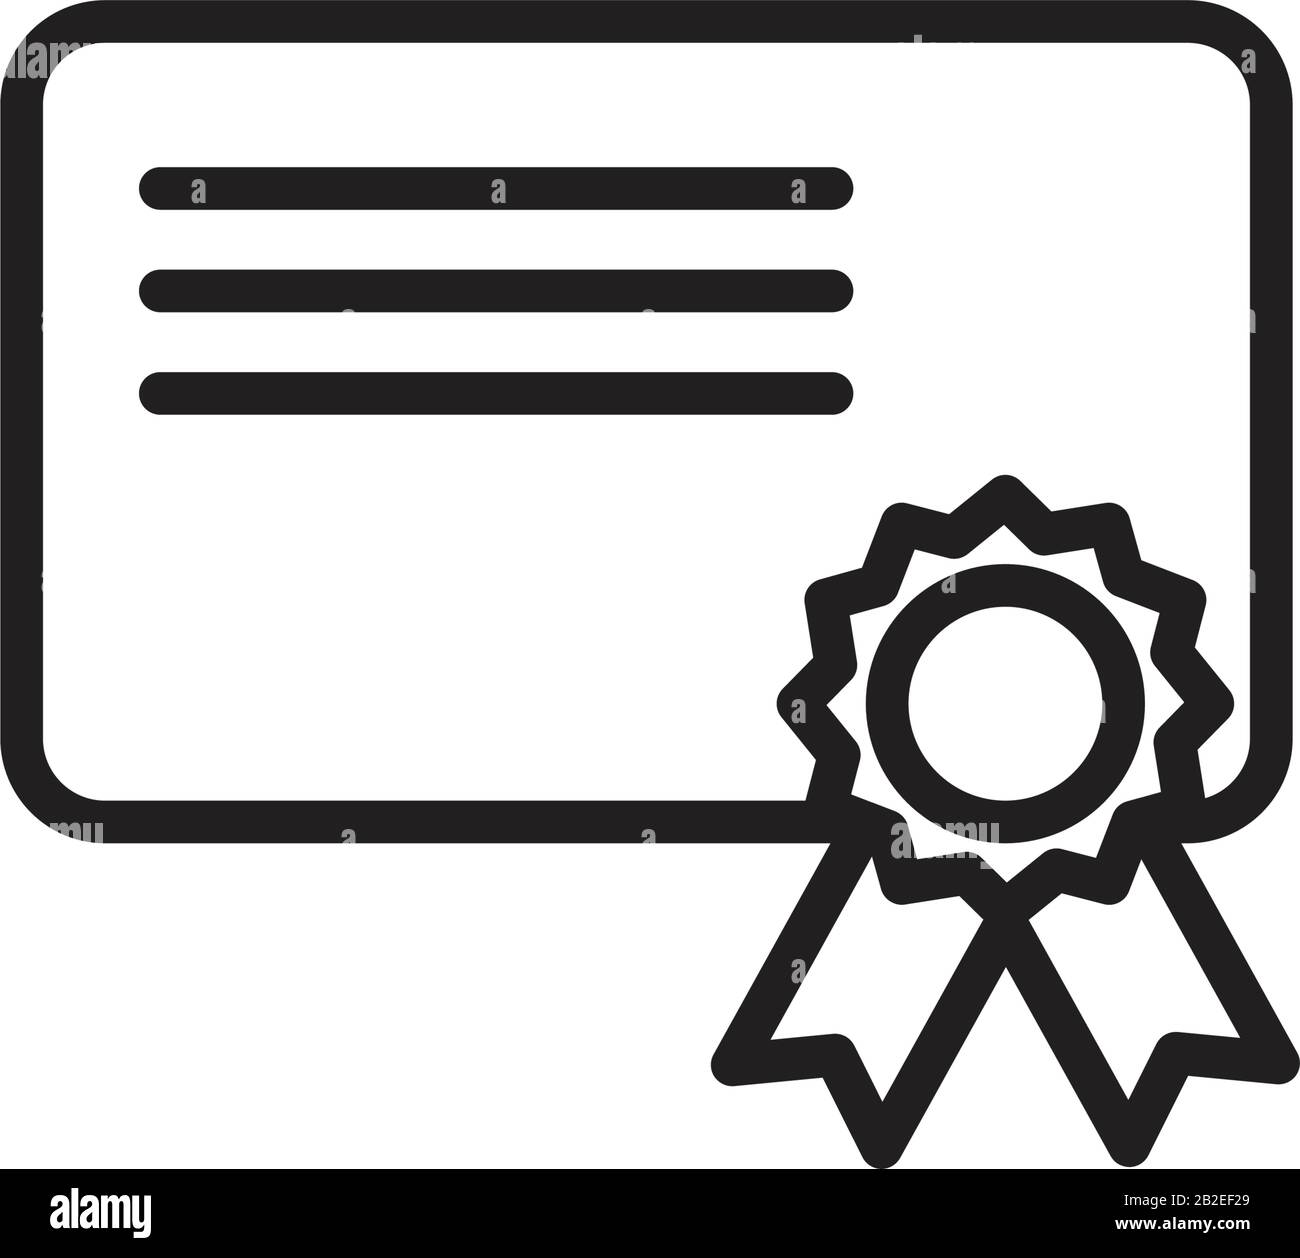 Vorlage für das Diplomsymbol in schwarzer Farbe editierbar. Symbol für Diplomatensymbol flache Vektorgrafiken für Grafik- und Webdesign. Stock Vektor